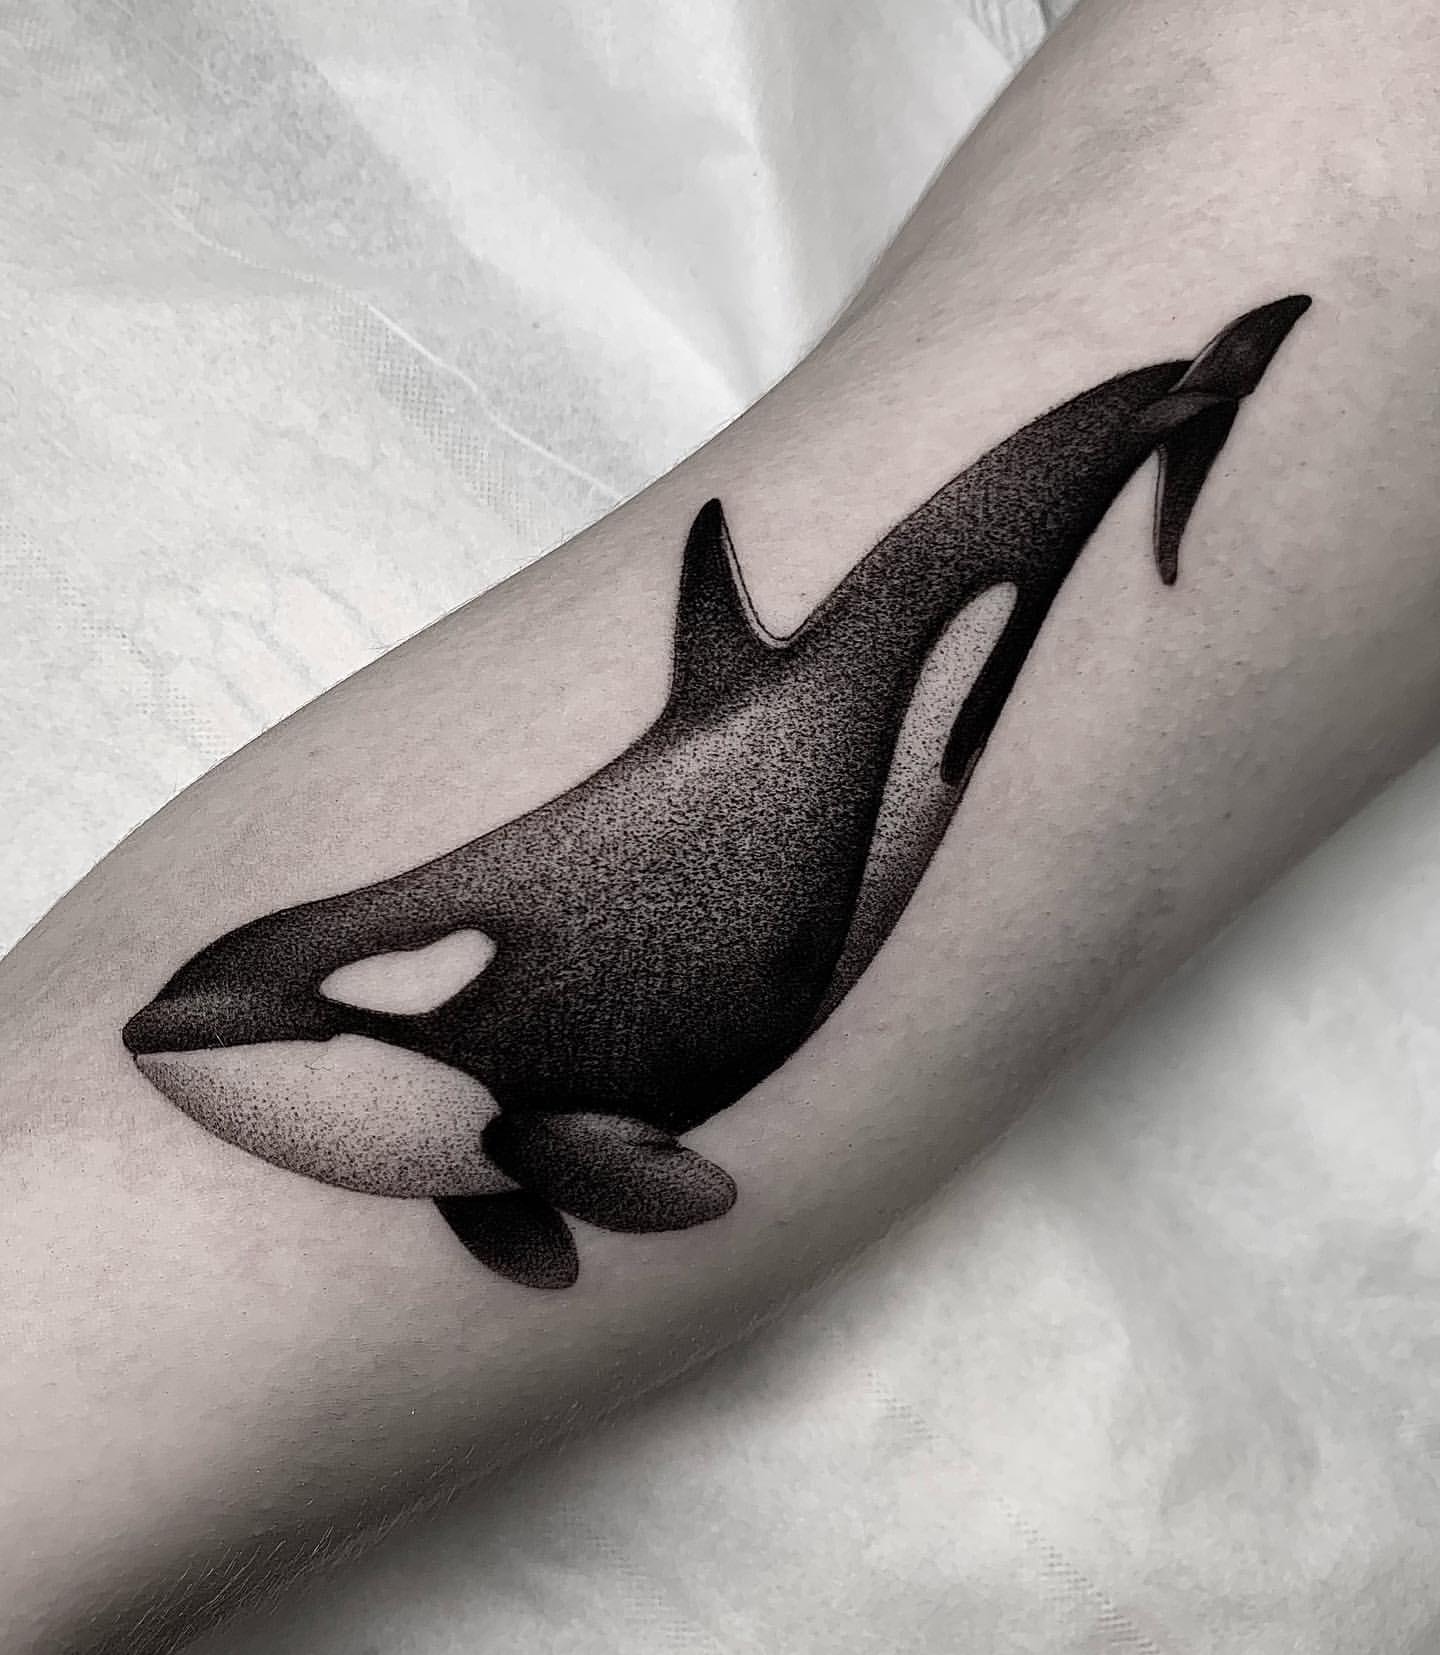 Orca Tattoo Ideas 25